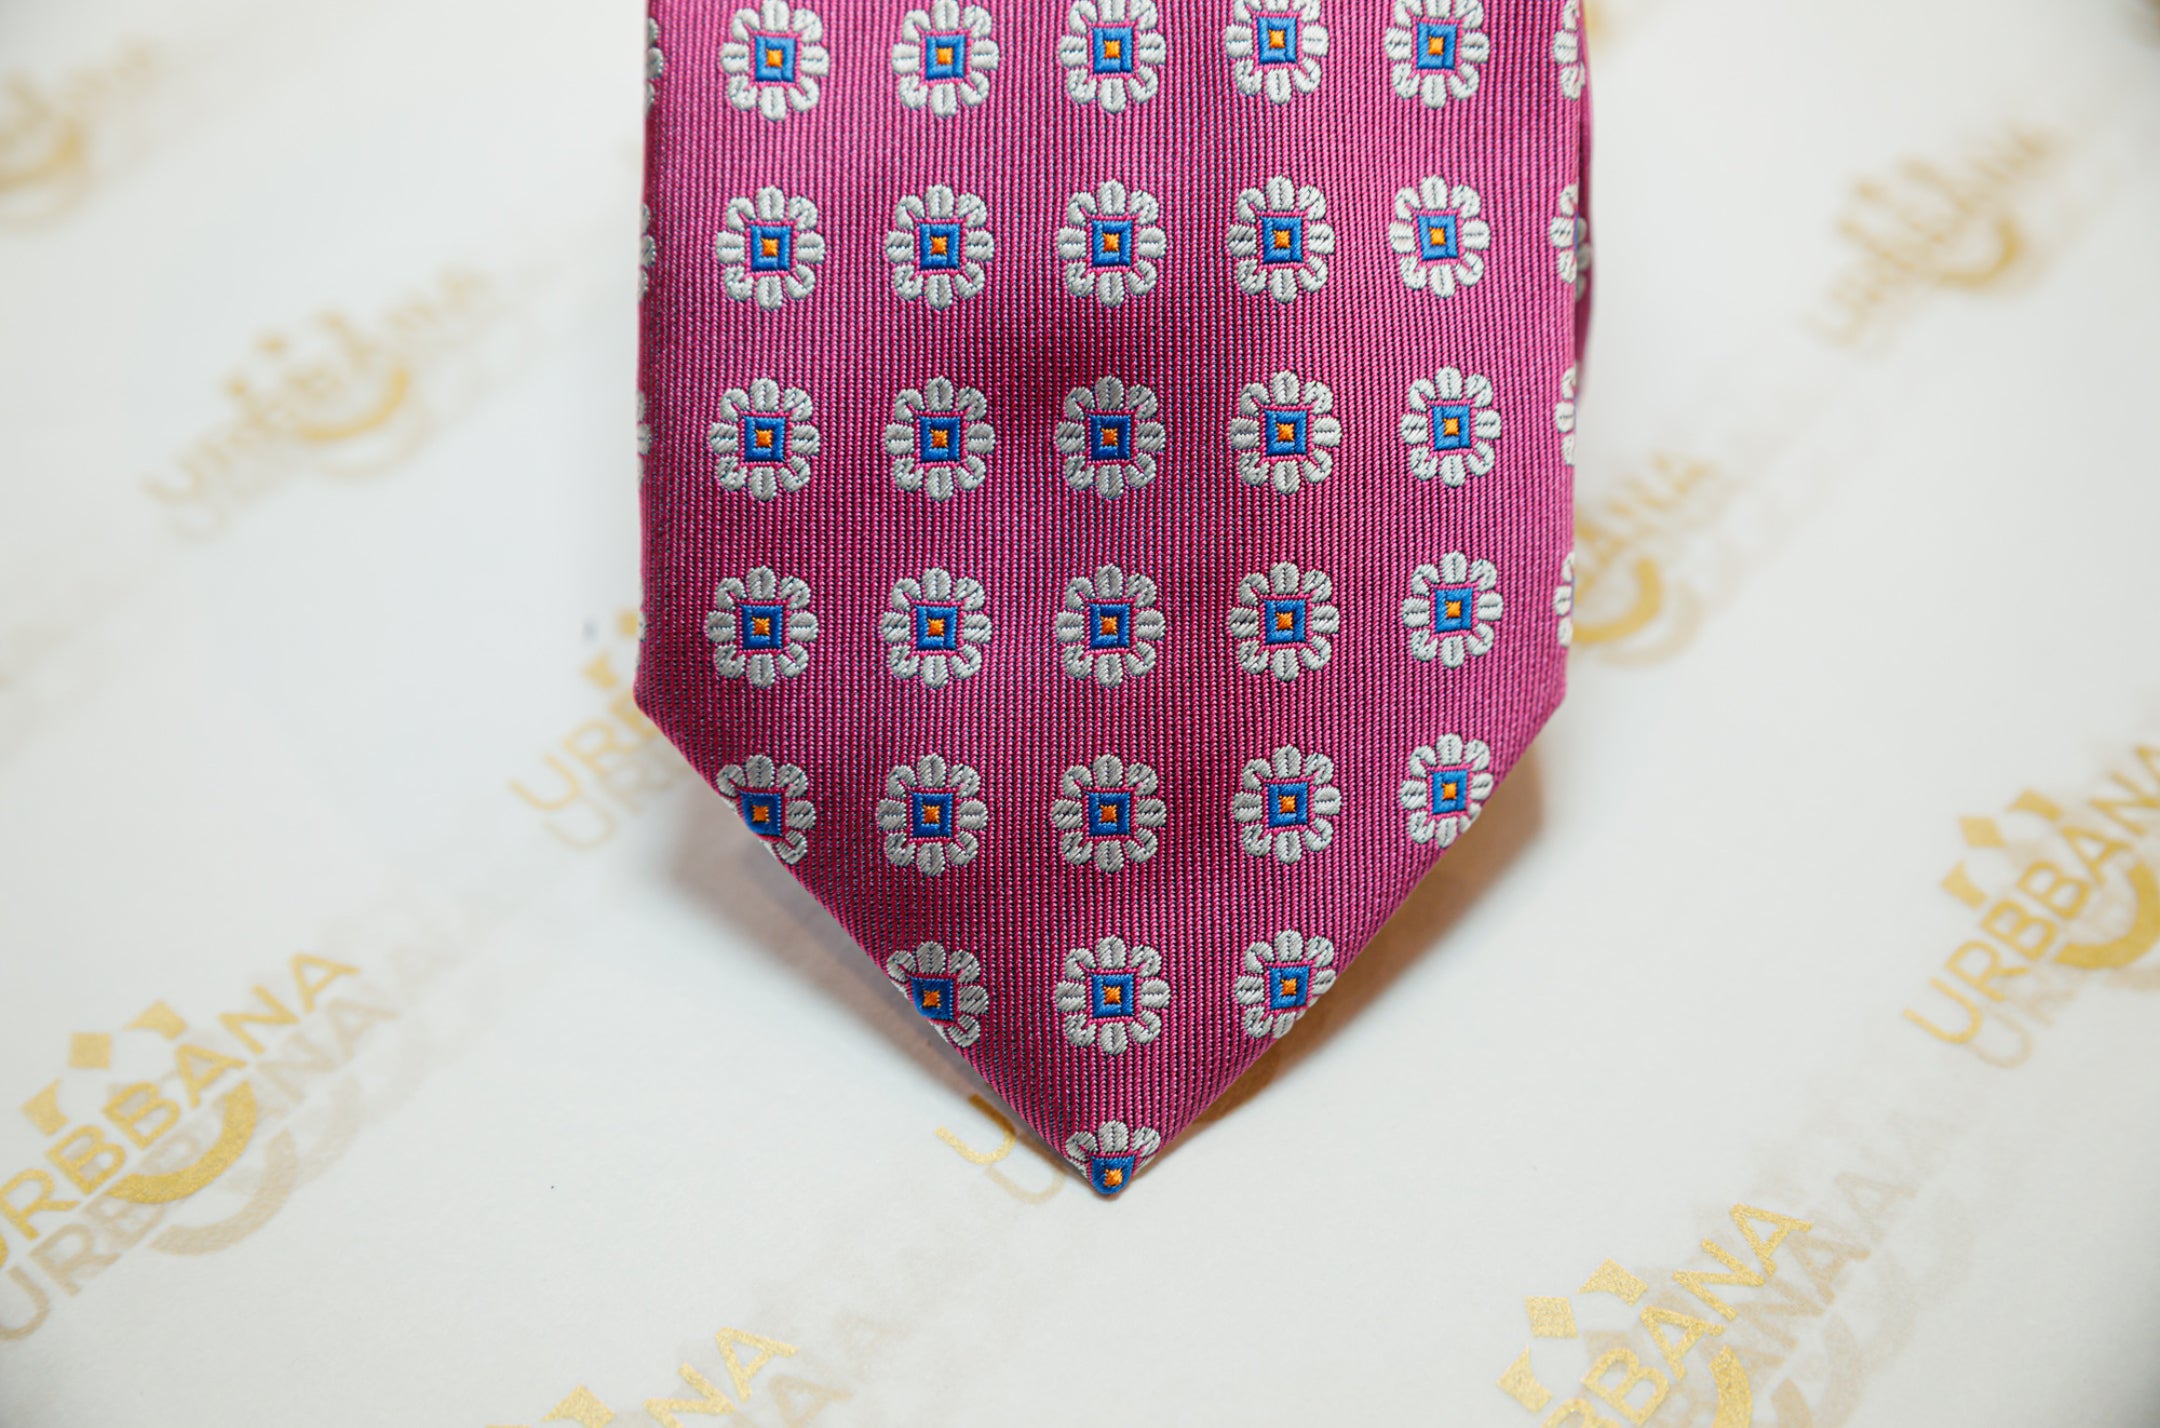 The Zurich Silk Tie